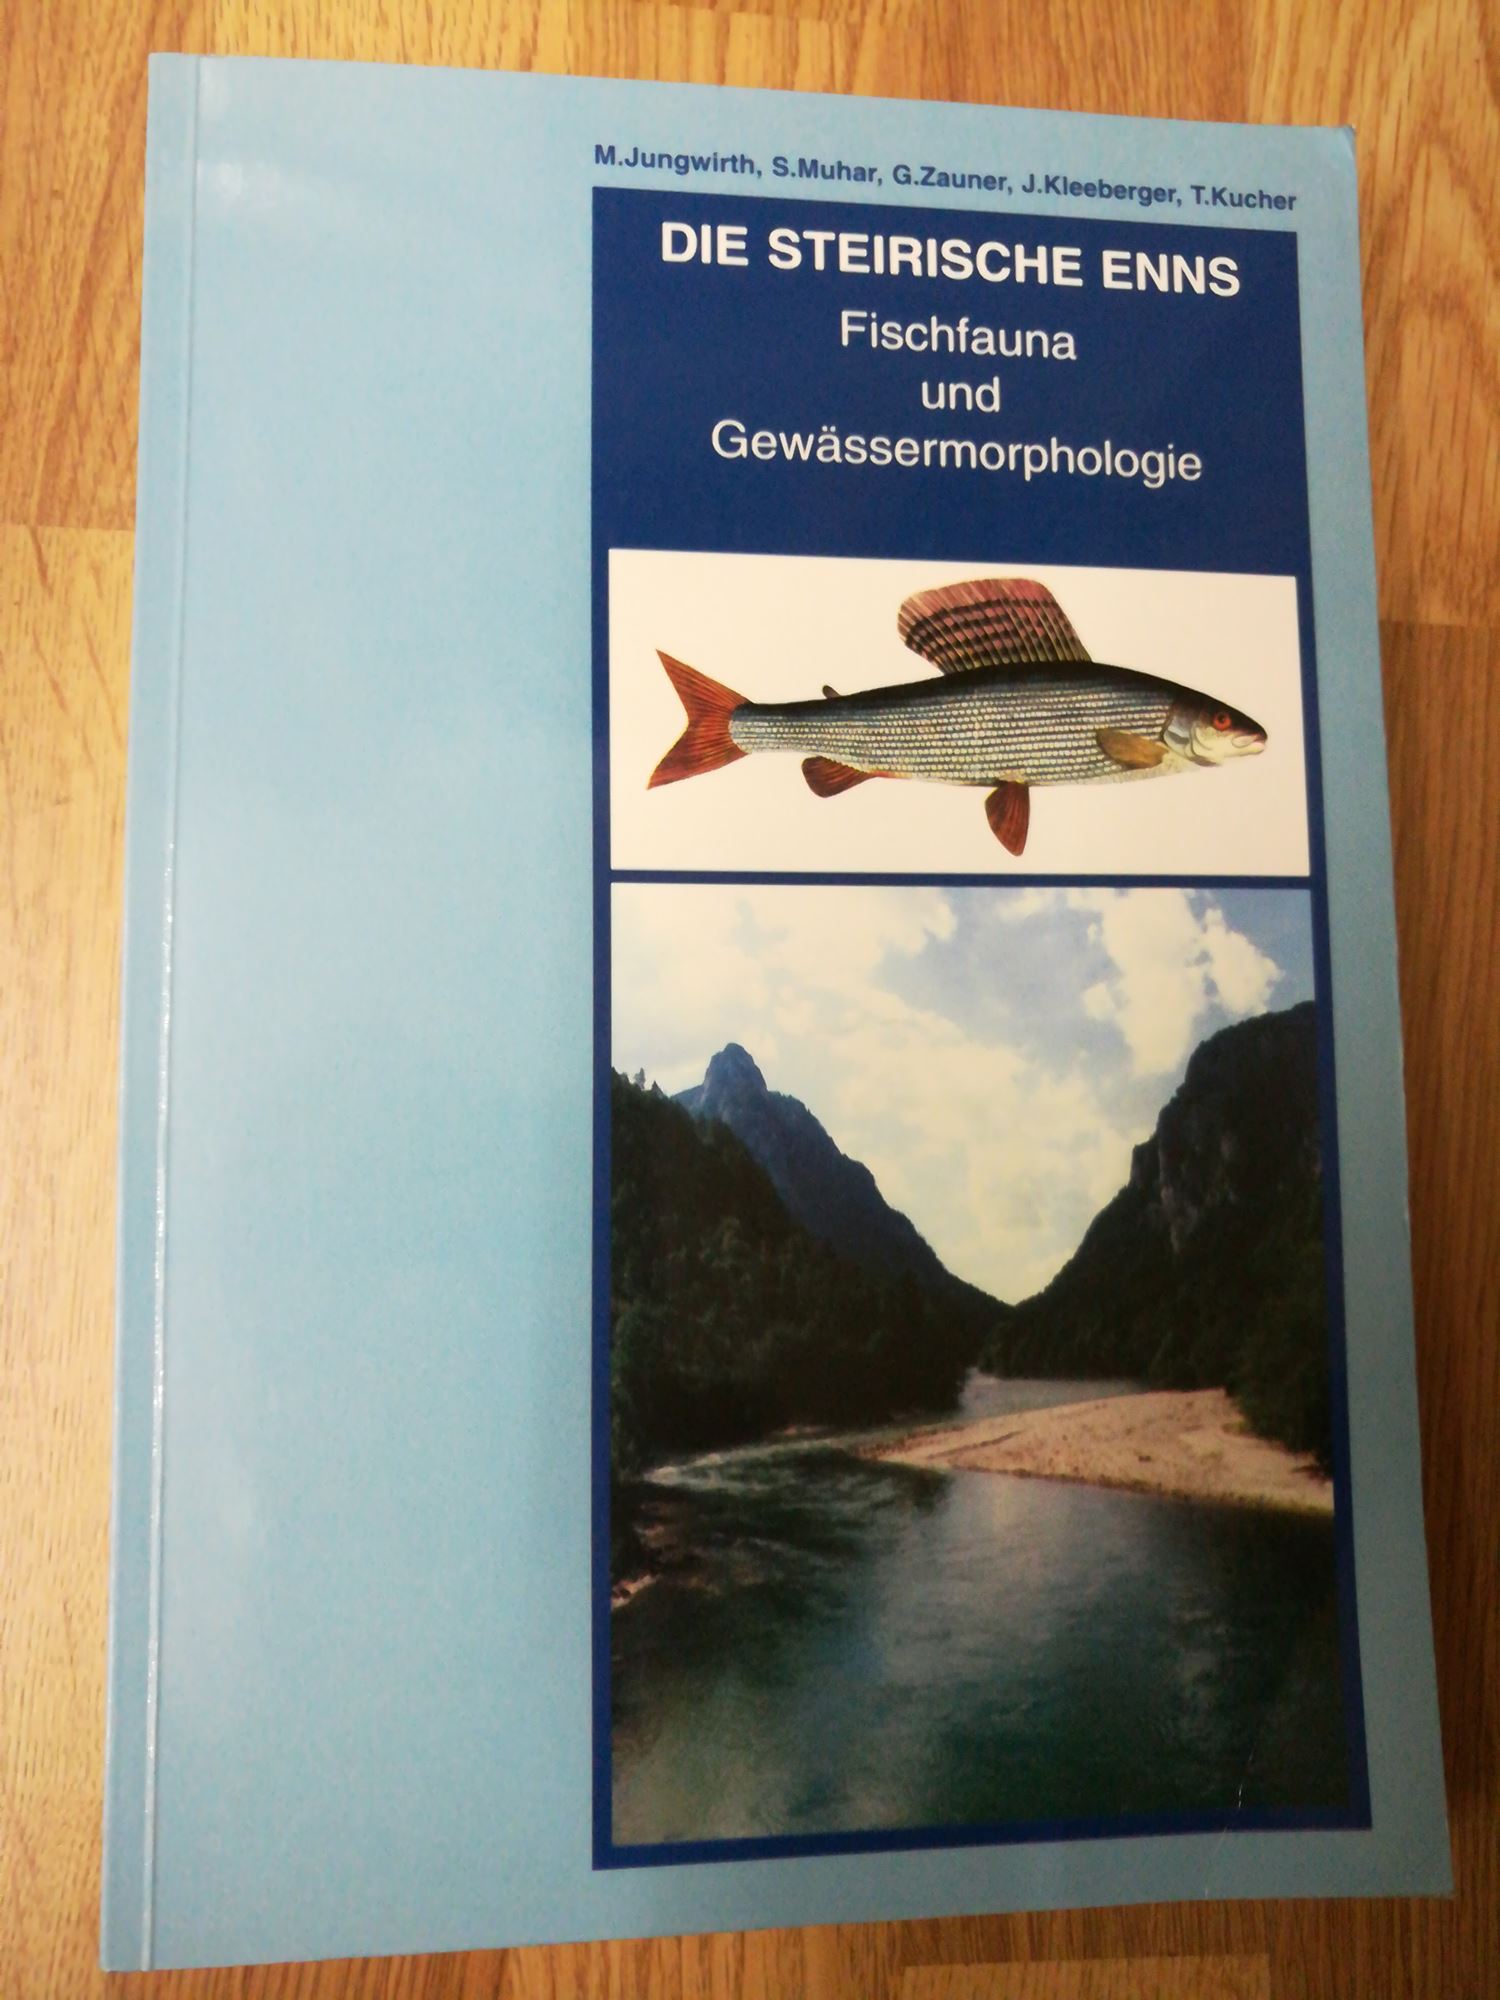 Die steirische Enns / Fischfauna und Gewässermorphologie - Jungwirth, Mathias / Muhar, Susanne u.a.